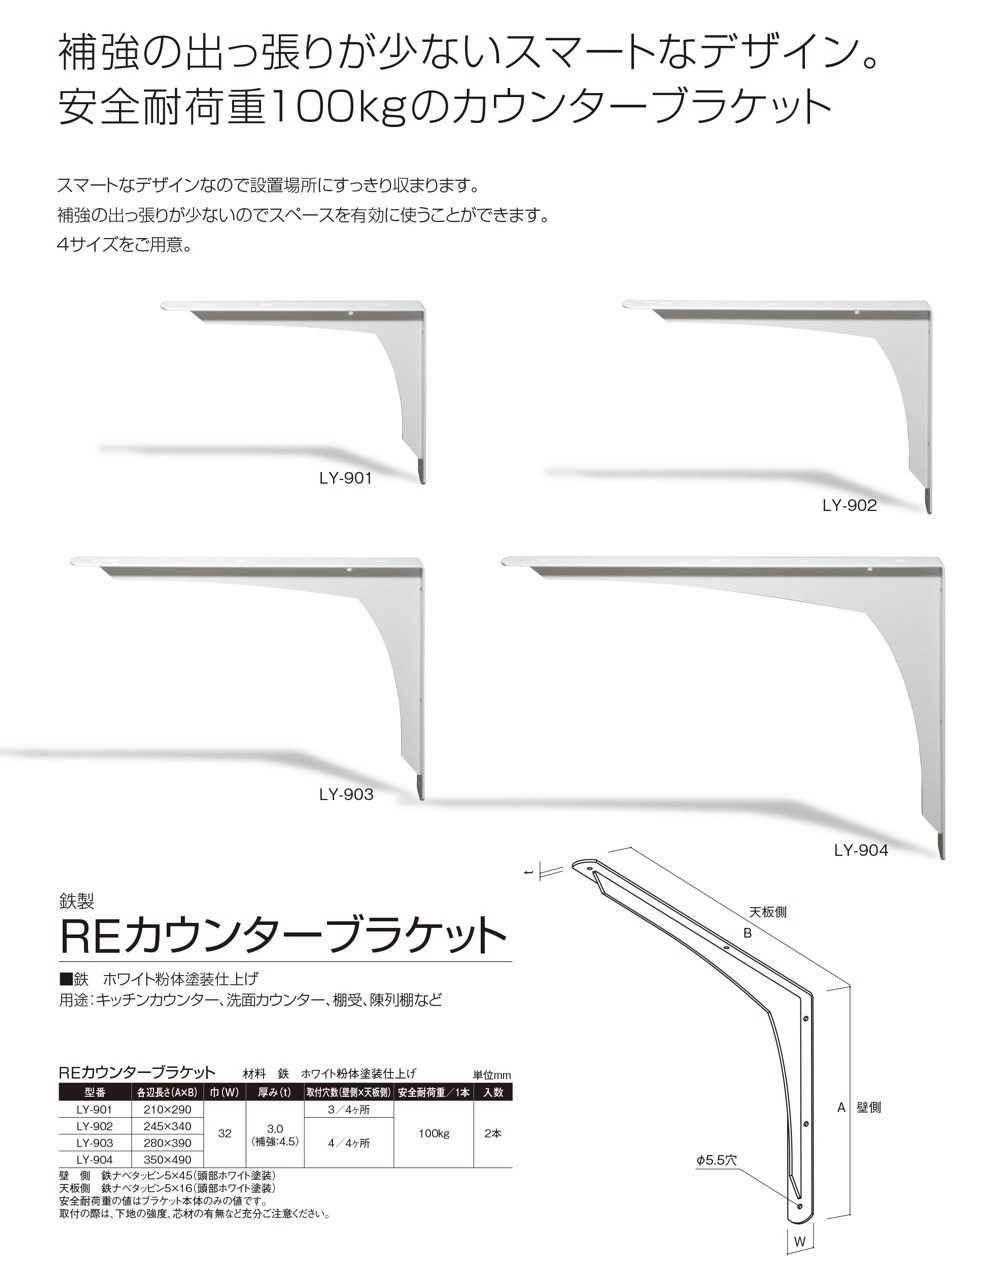 サヌキ カウンターブラケット LS-734 250×500×38 ステンレス - 2